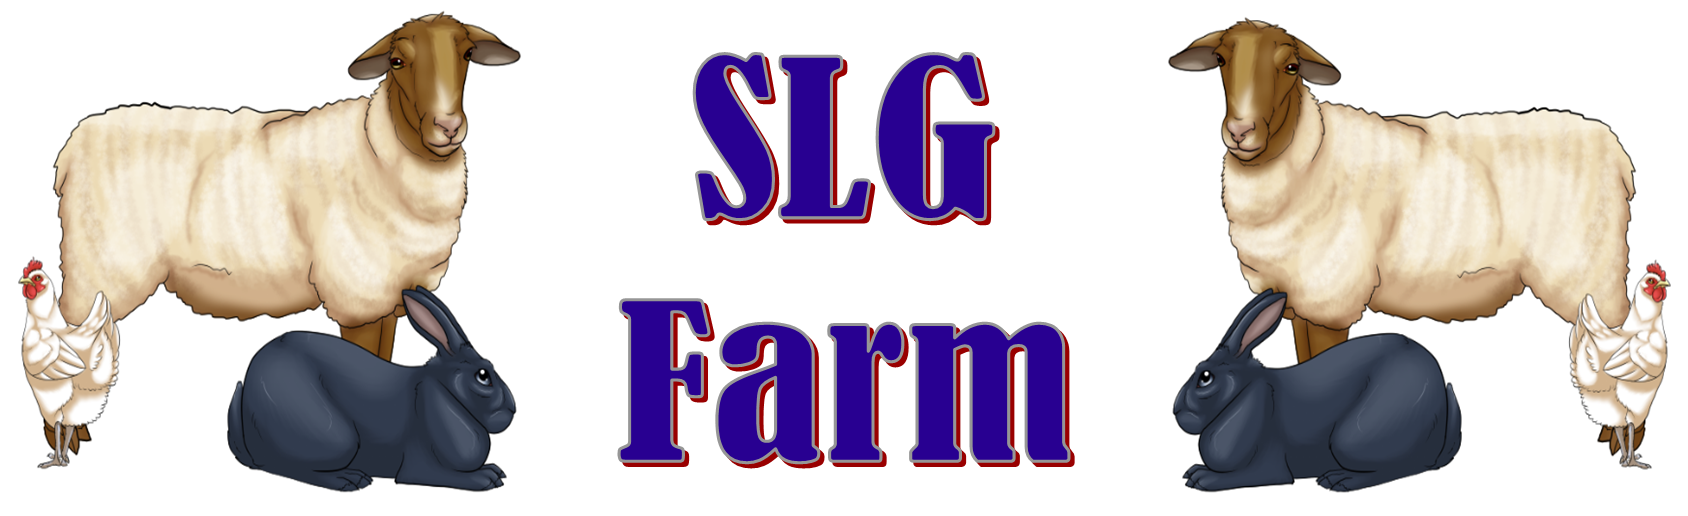 SLG Farm Header 1